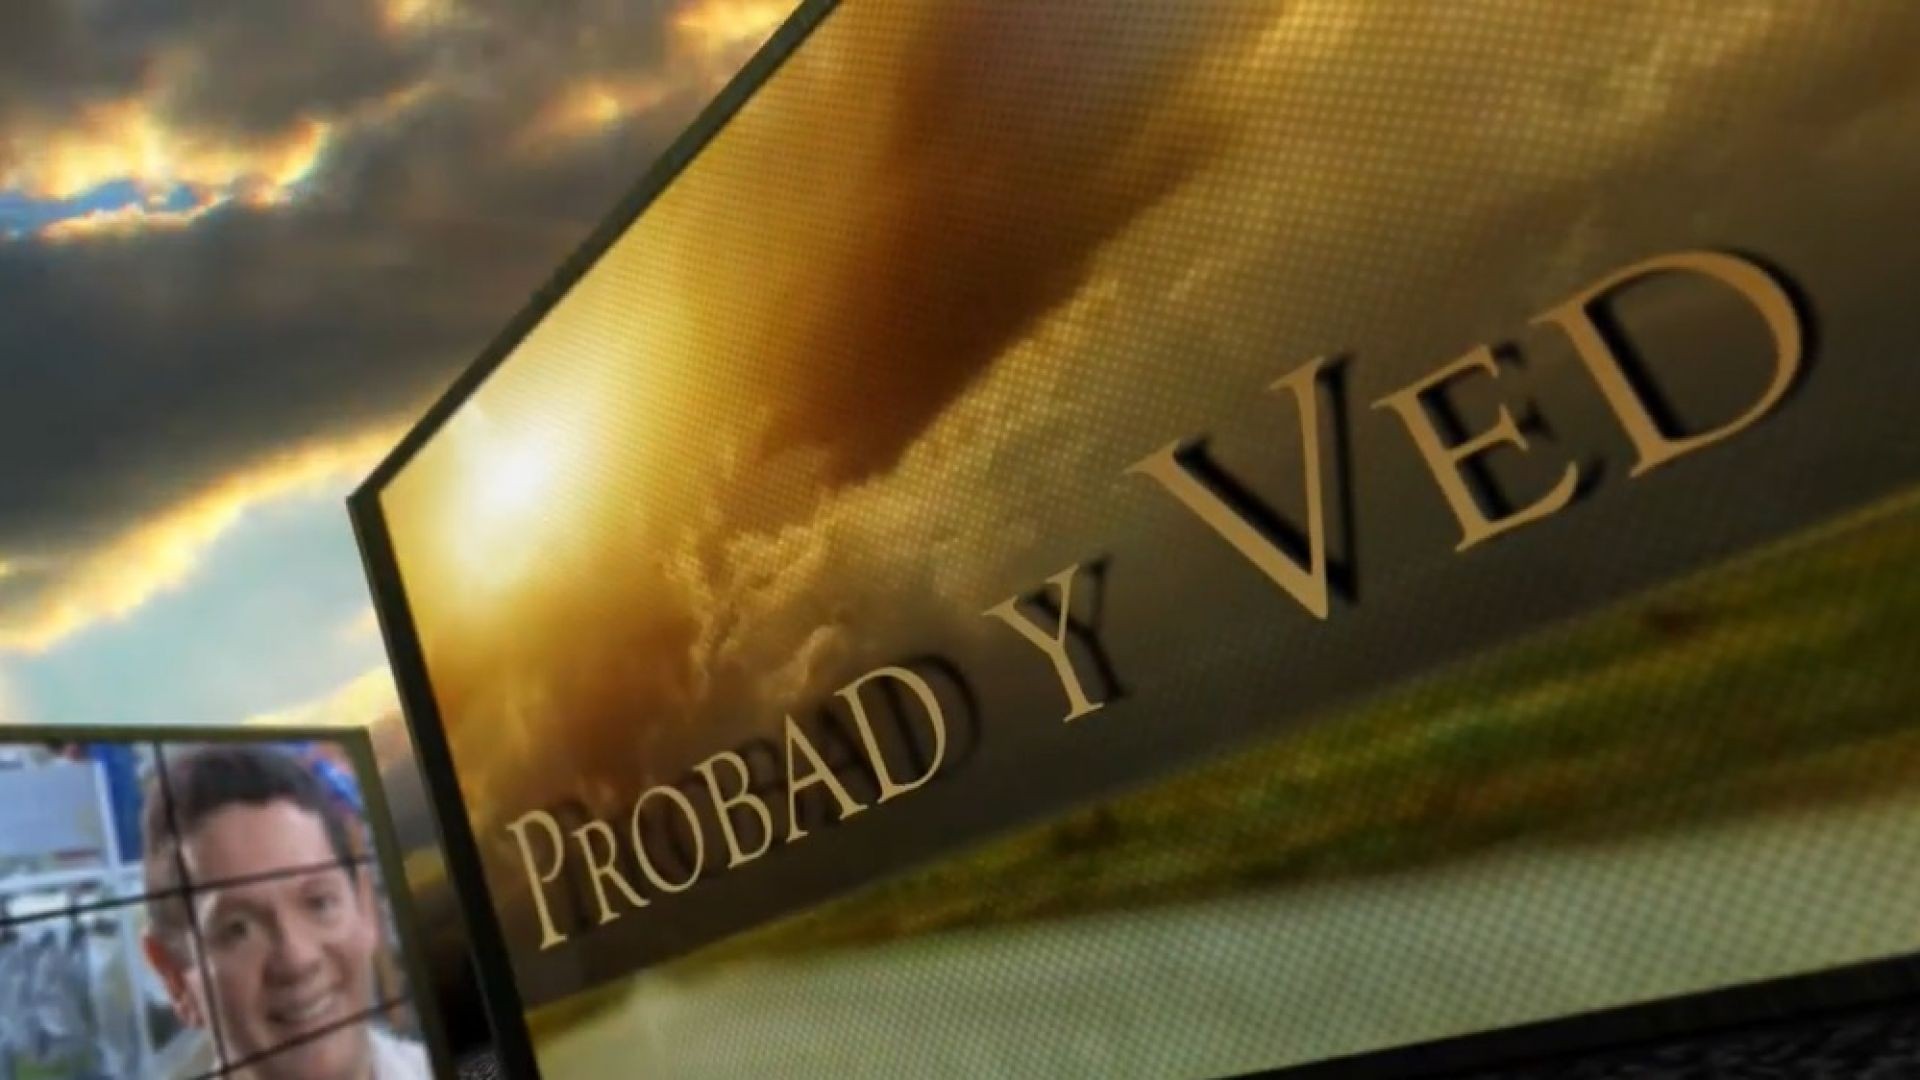 Probad y Ved 2013 - Dificultates vencidas - 14/Sep